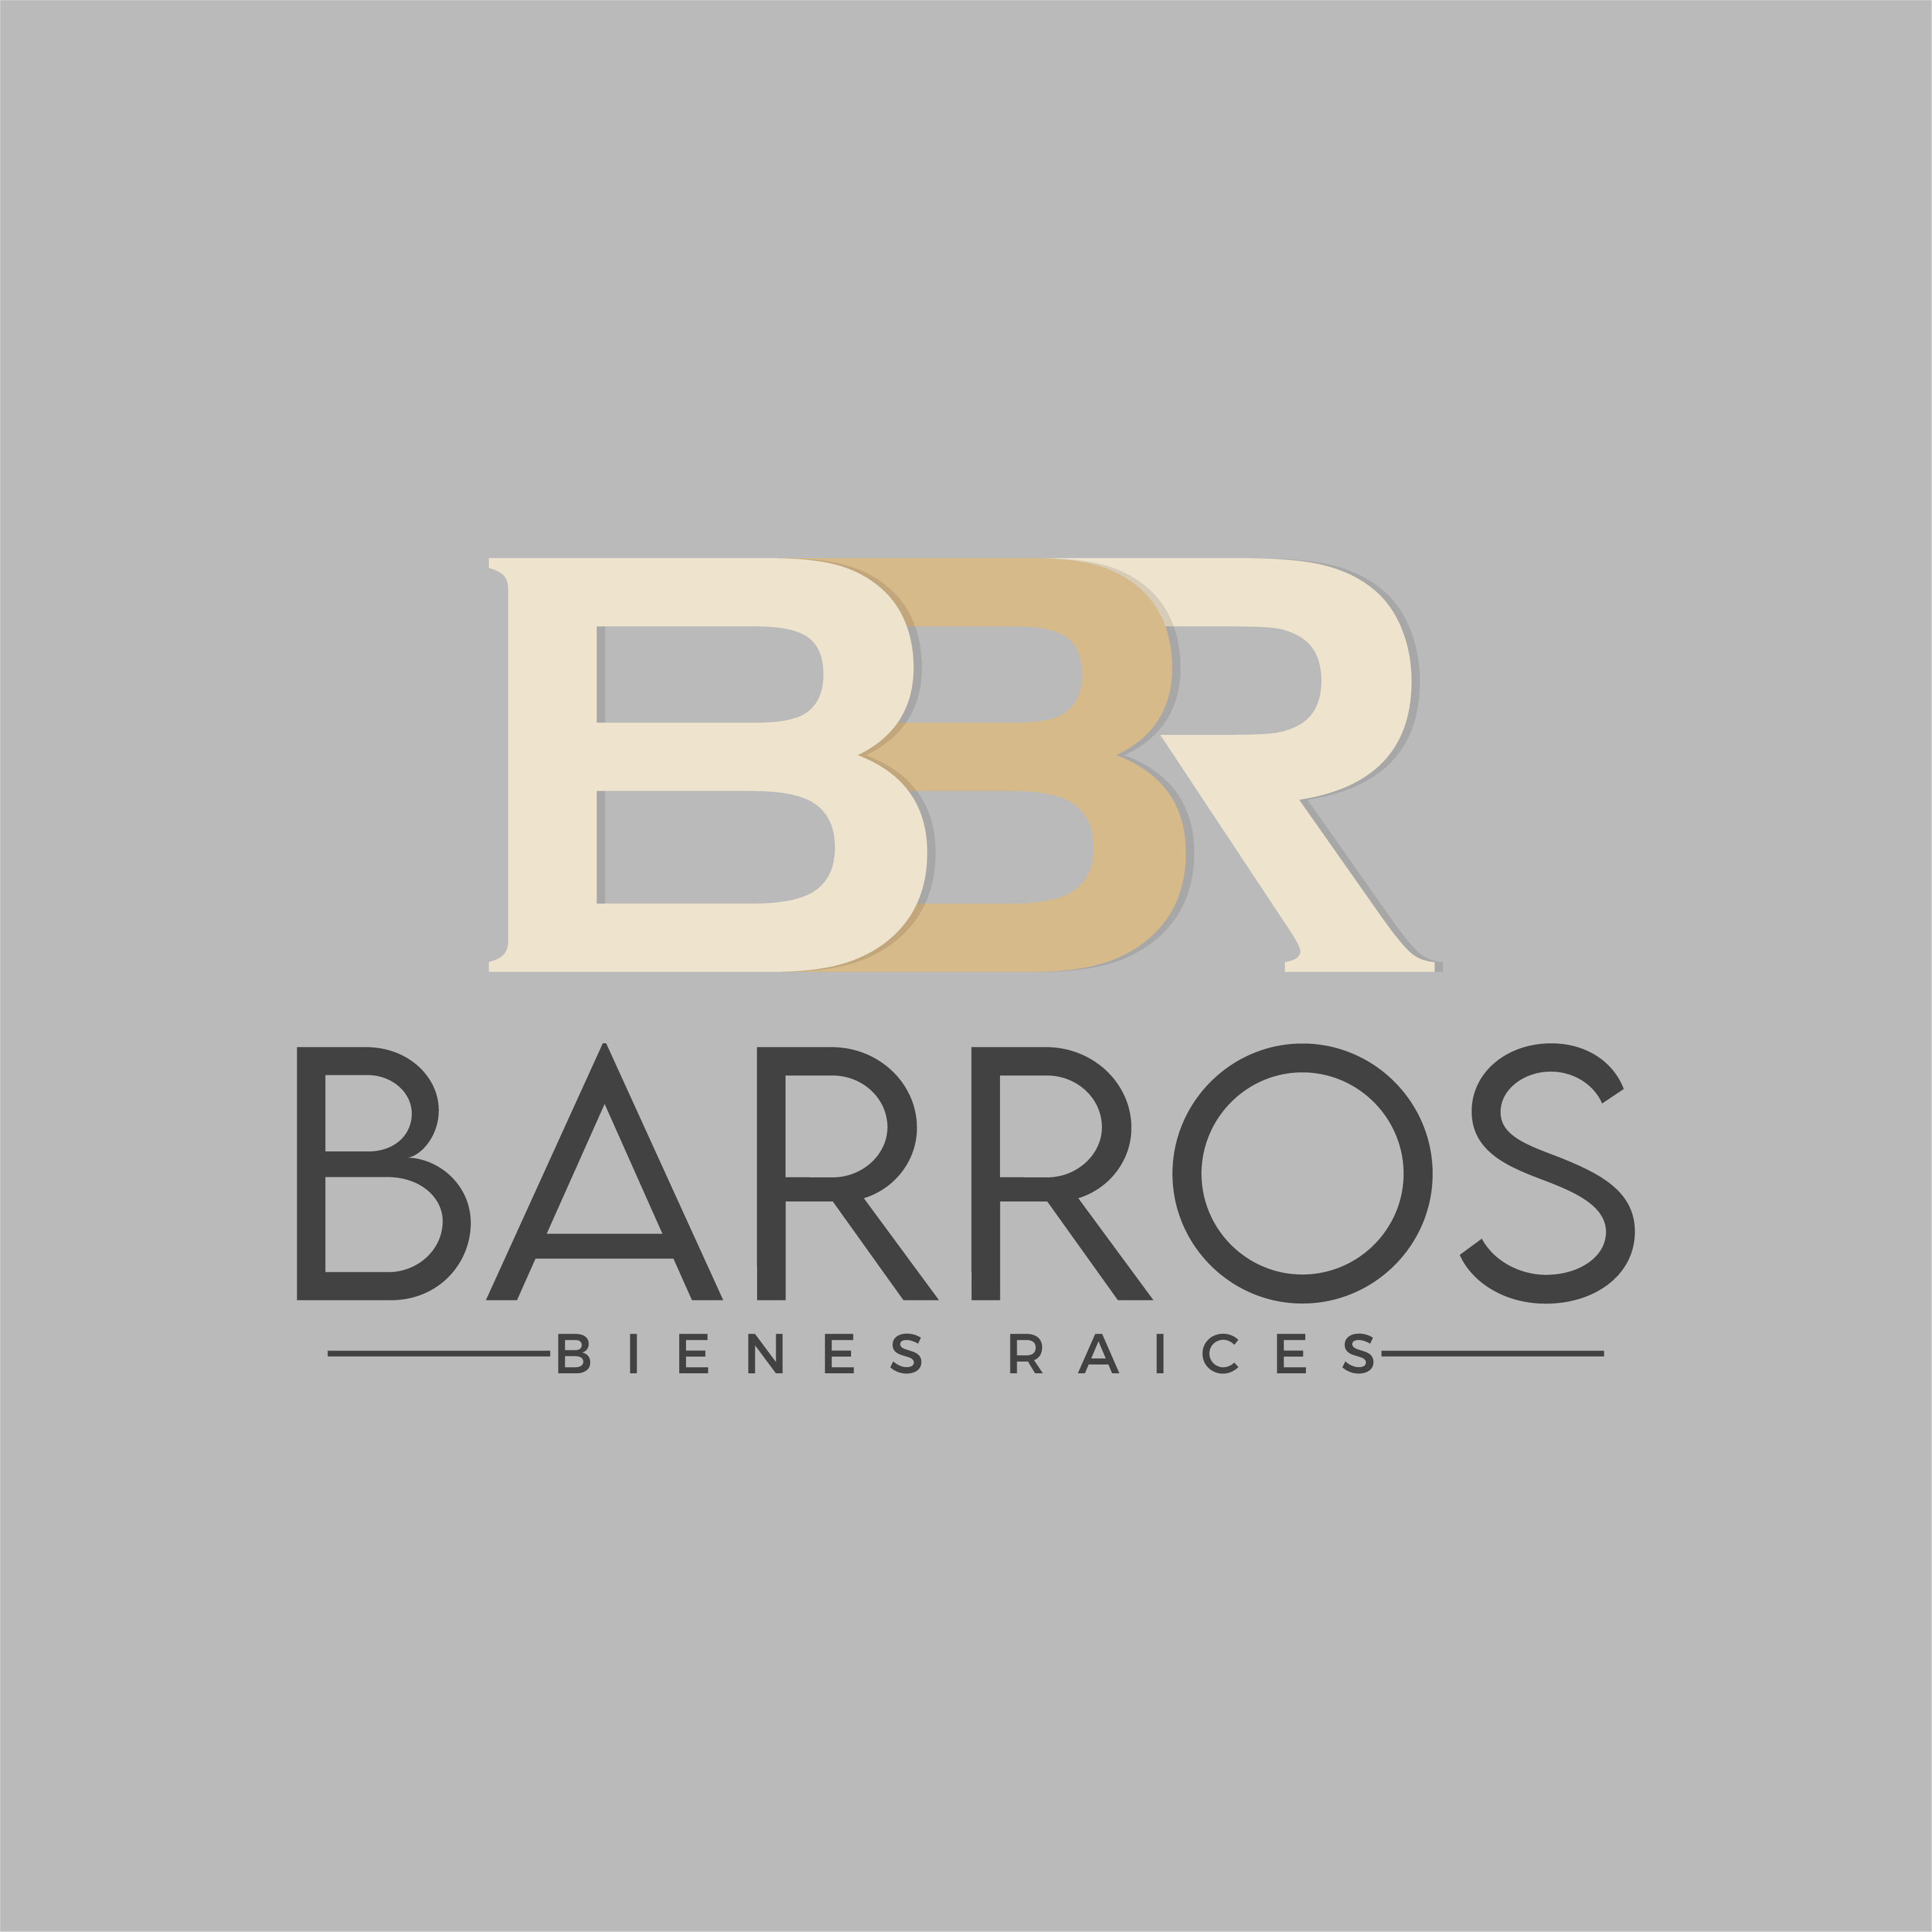 Barros bienes raices